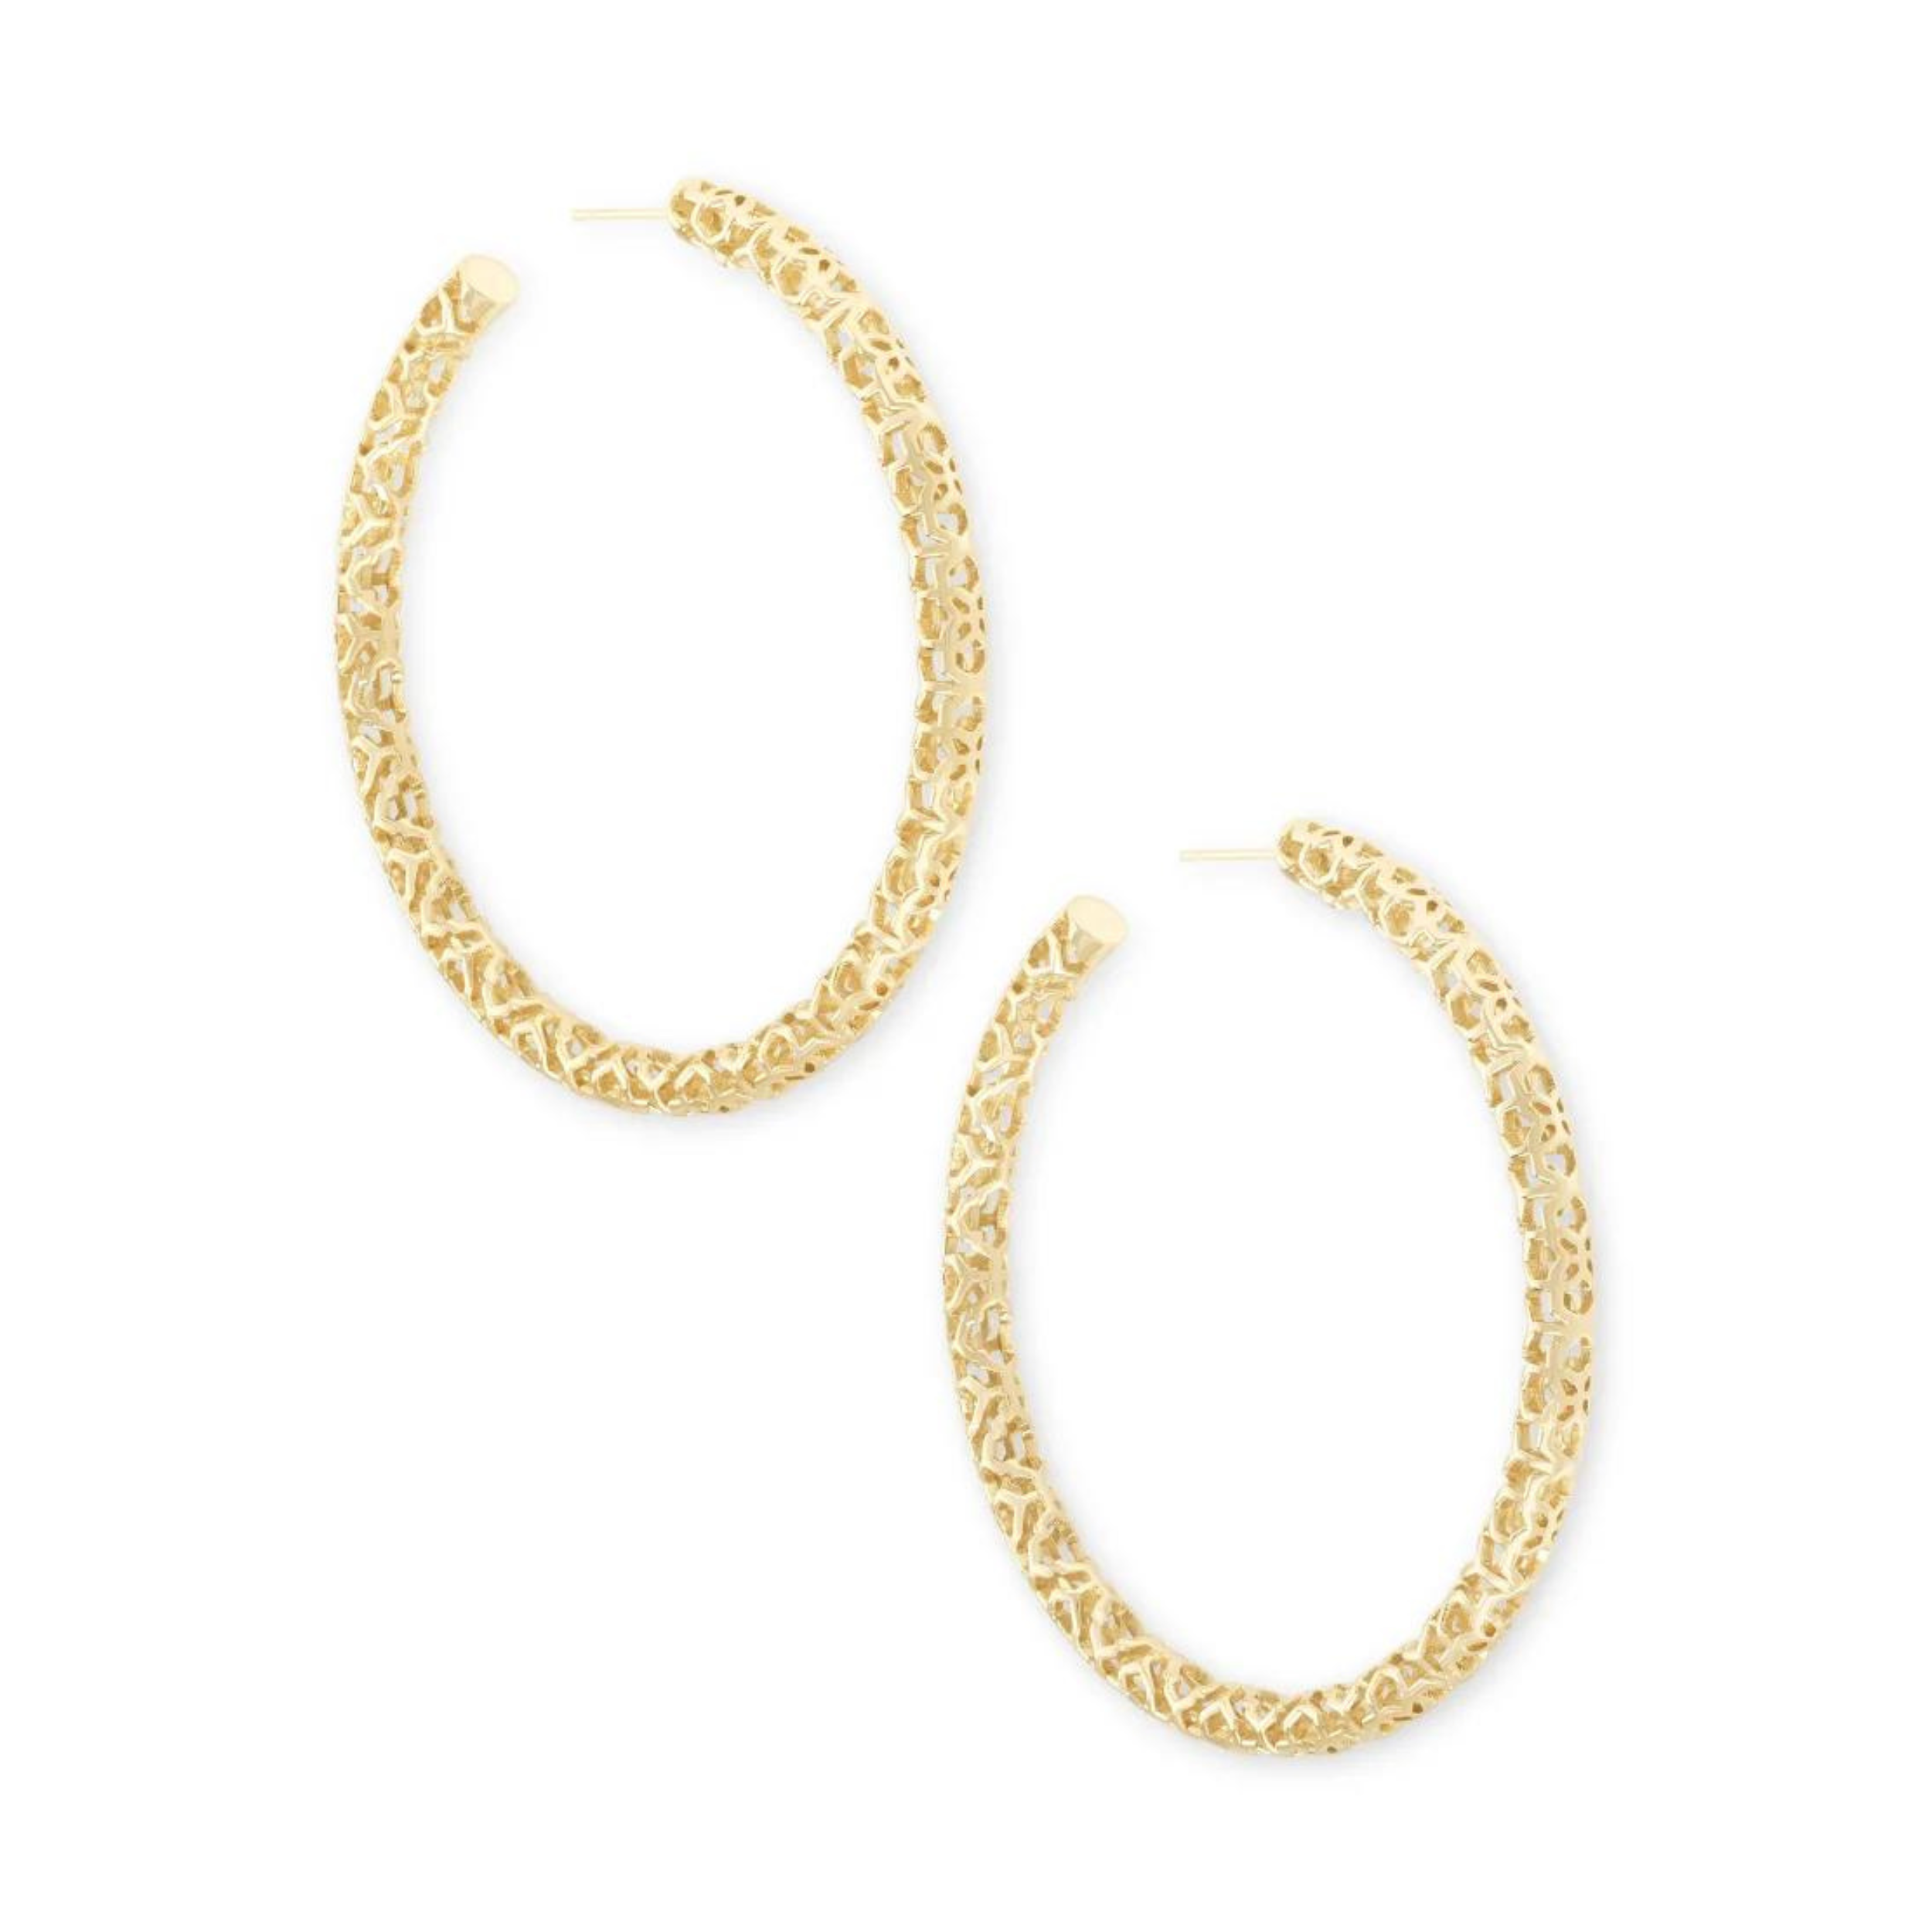 Large gold hoop earrings with filigree detaling.